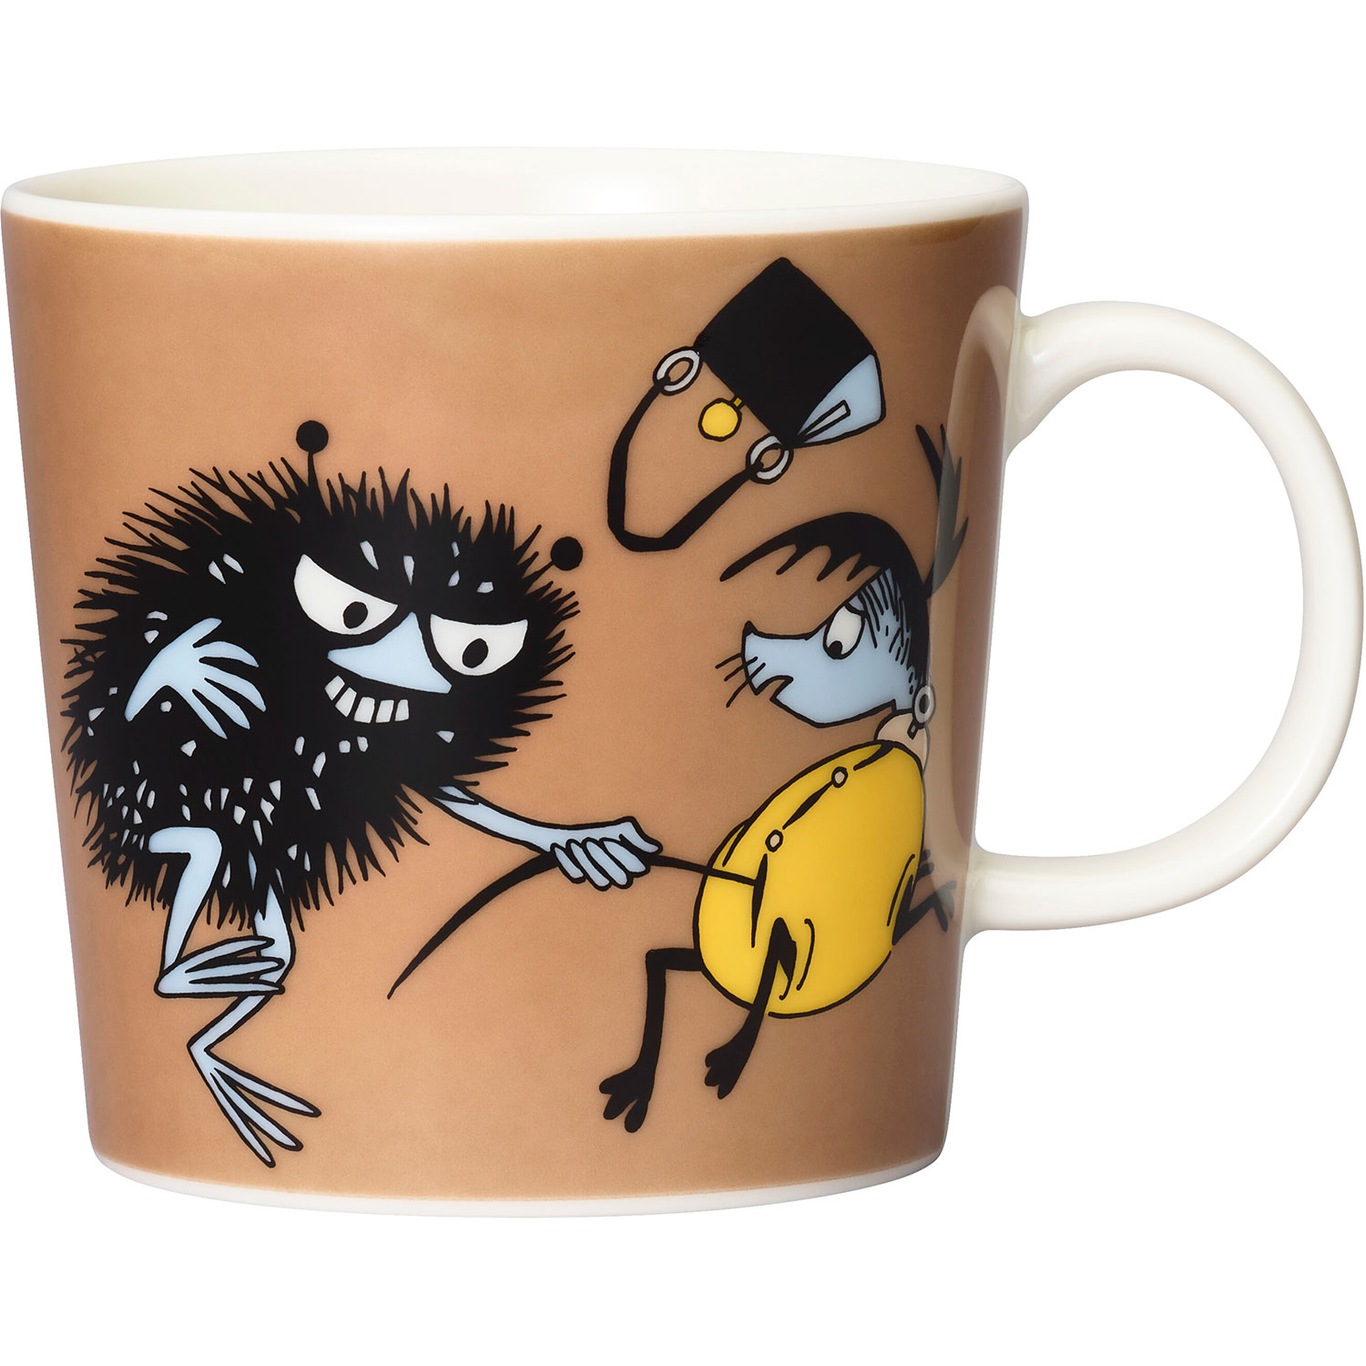 Moomin Mug 30 cl, Stinky On The Go